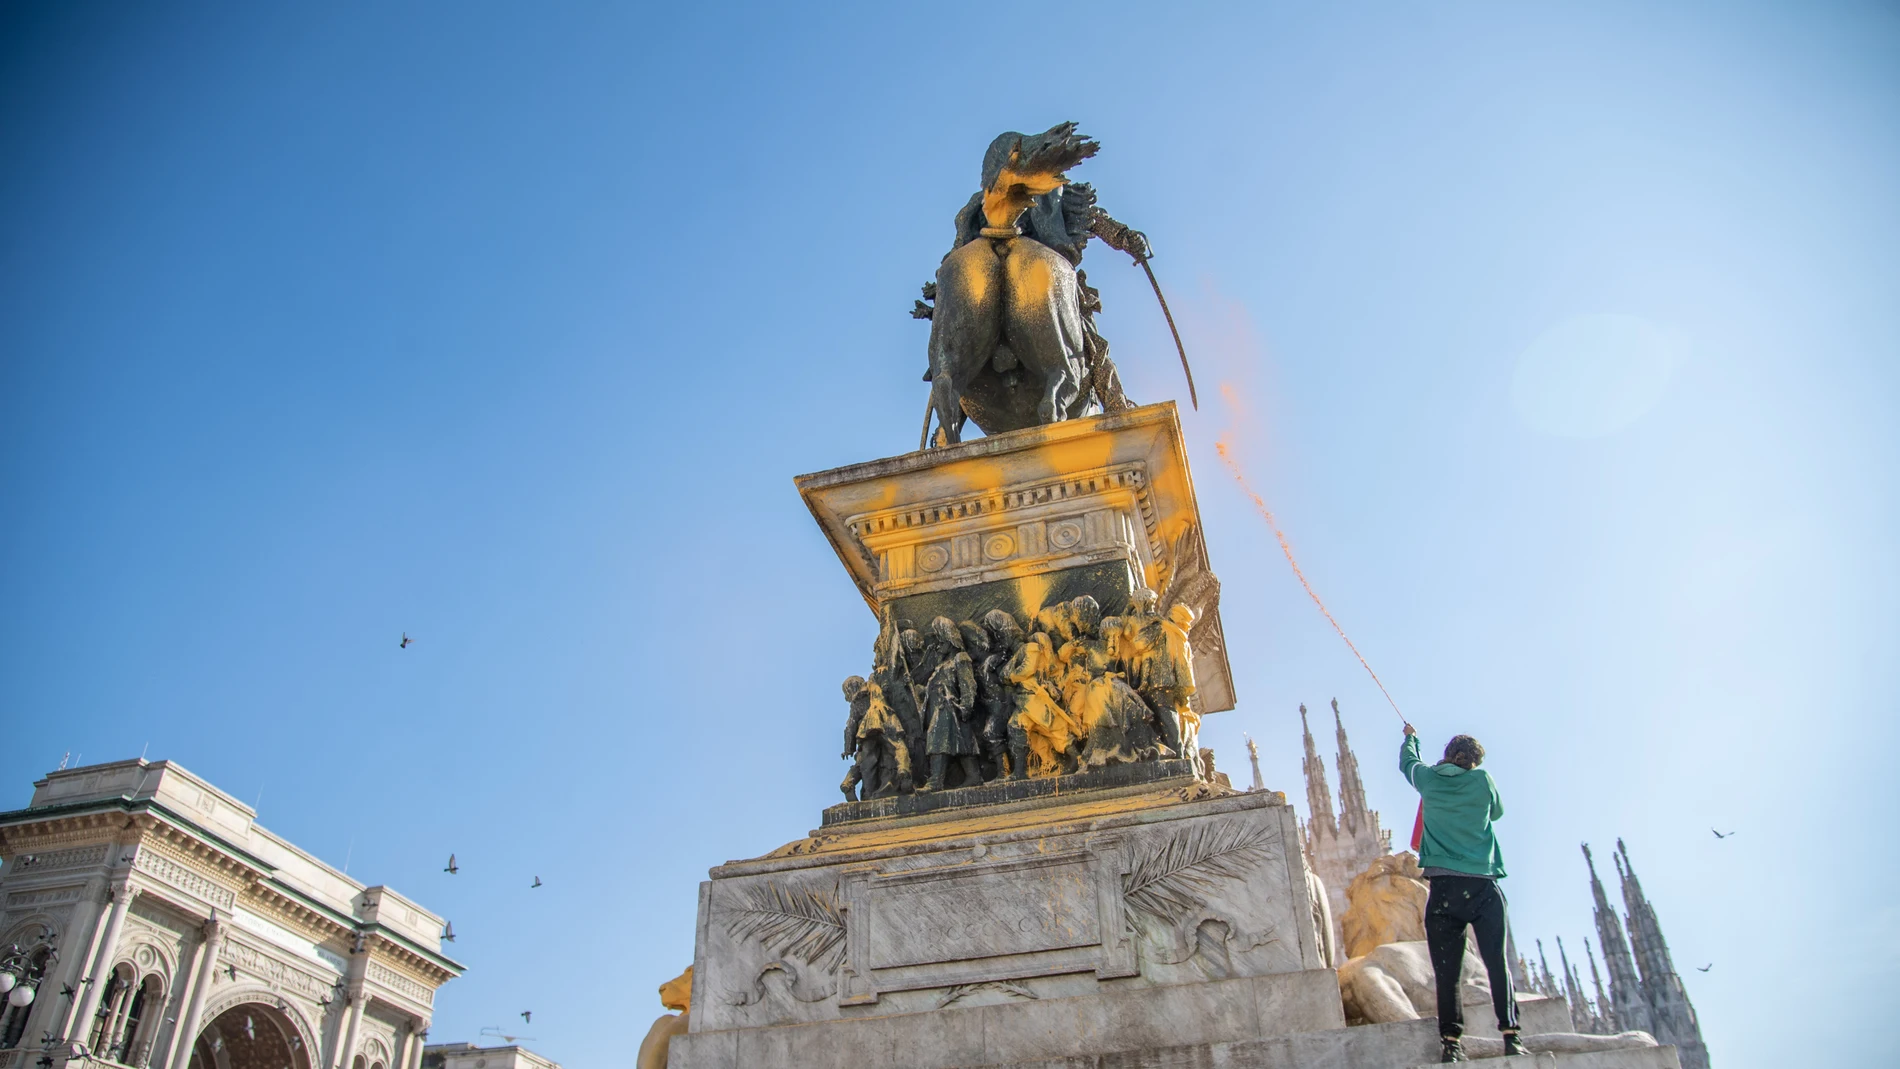 Activistas medioambientales arrojan pintura contra la estatua ecuestre de Vittorio Emanuele en el Duomo de Milán